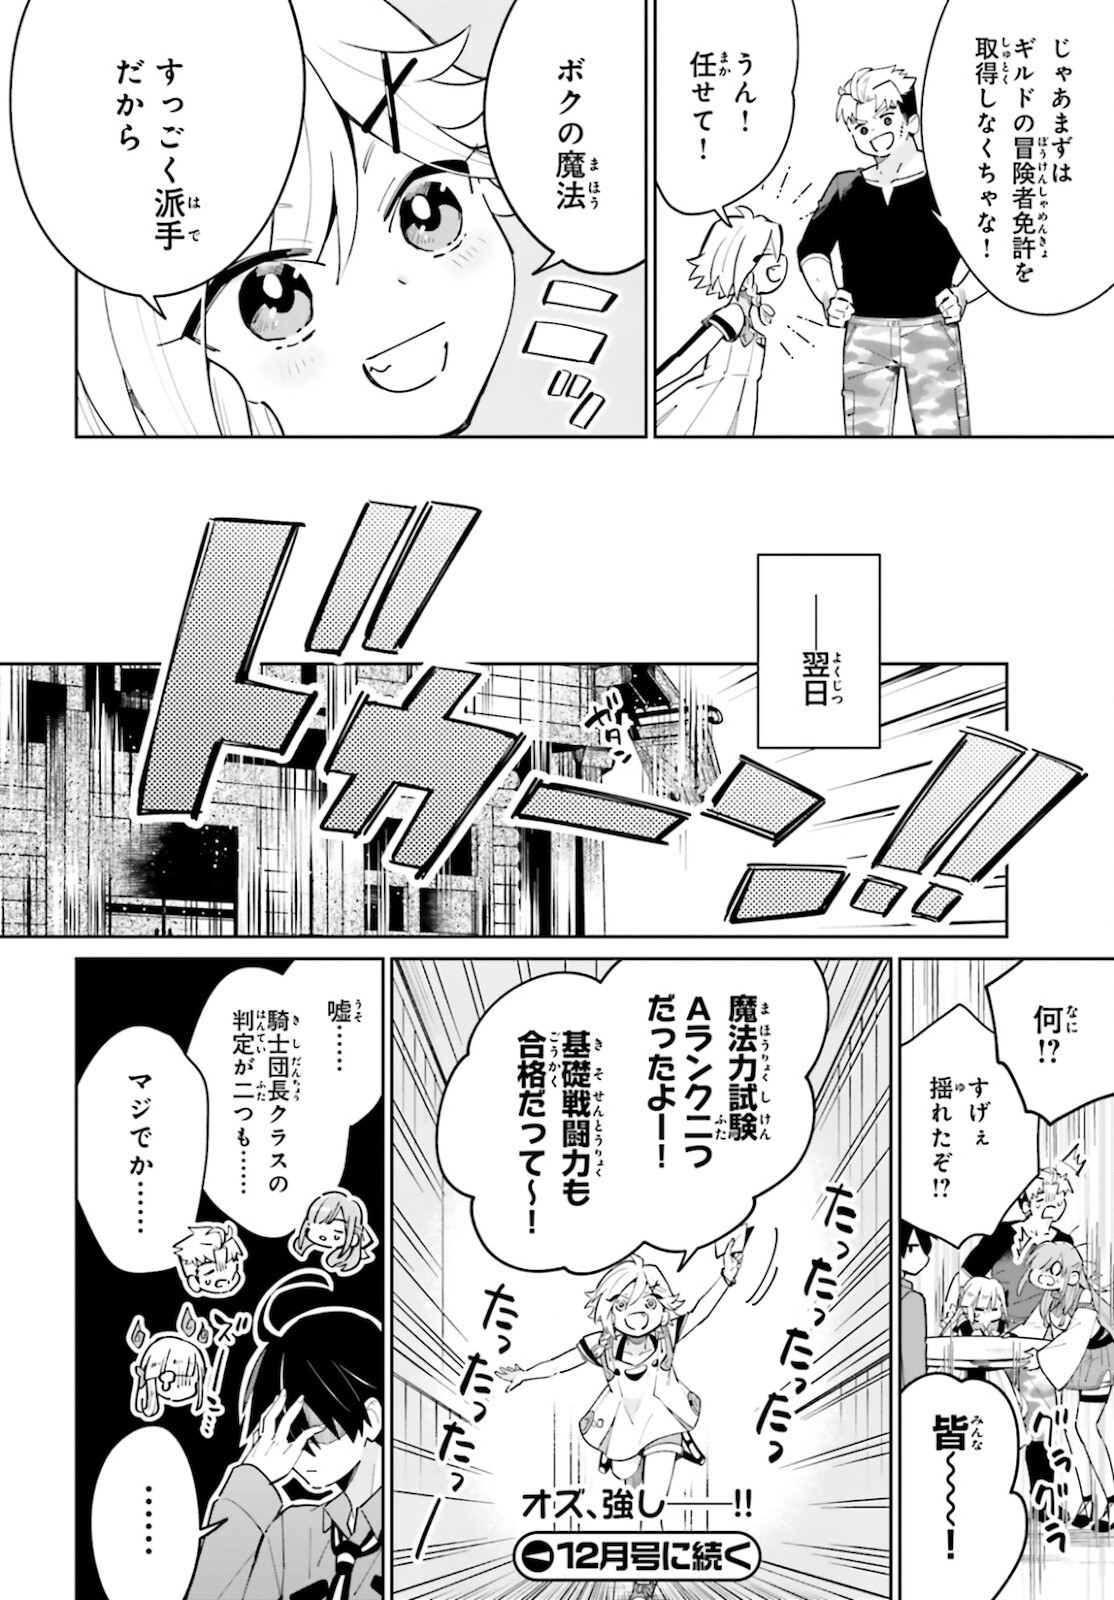 Kage-no-Eiyuu-no-Nichijou-tan-Ichi-no-Yuusha-no-Ura-de-An'yaku-Shite-ita-Saikyou-no-Eijento-Soshiki-ga-Kaitai-sareta-no-de-Shoutai-Kakushite-Hito-nami-no-Nichijou-o-Ouka-suru - Chapter 13 - Page 30